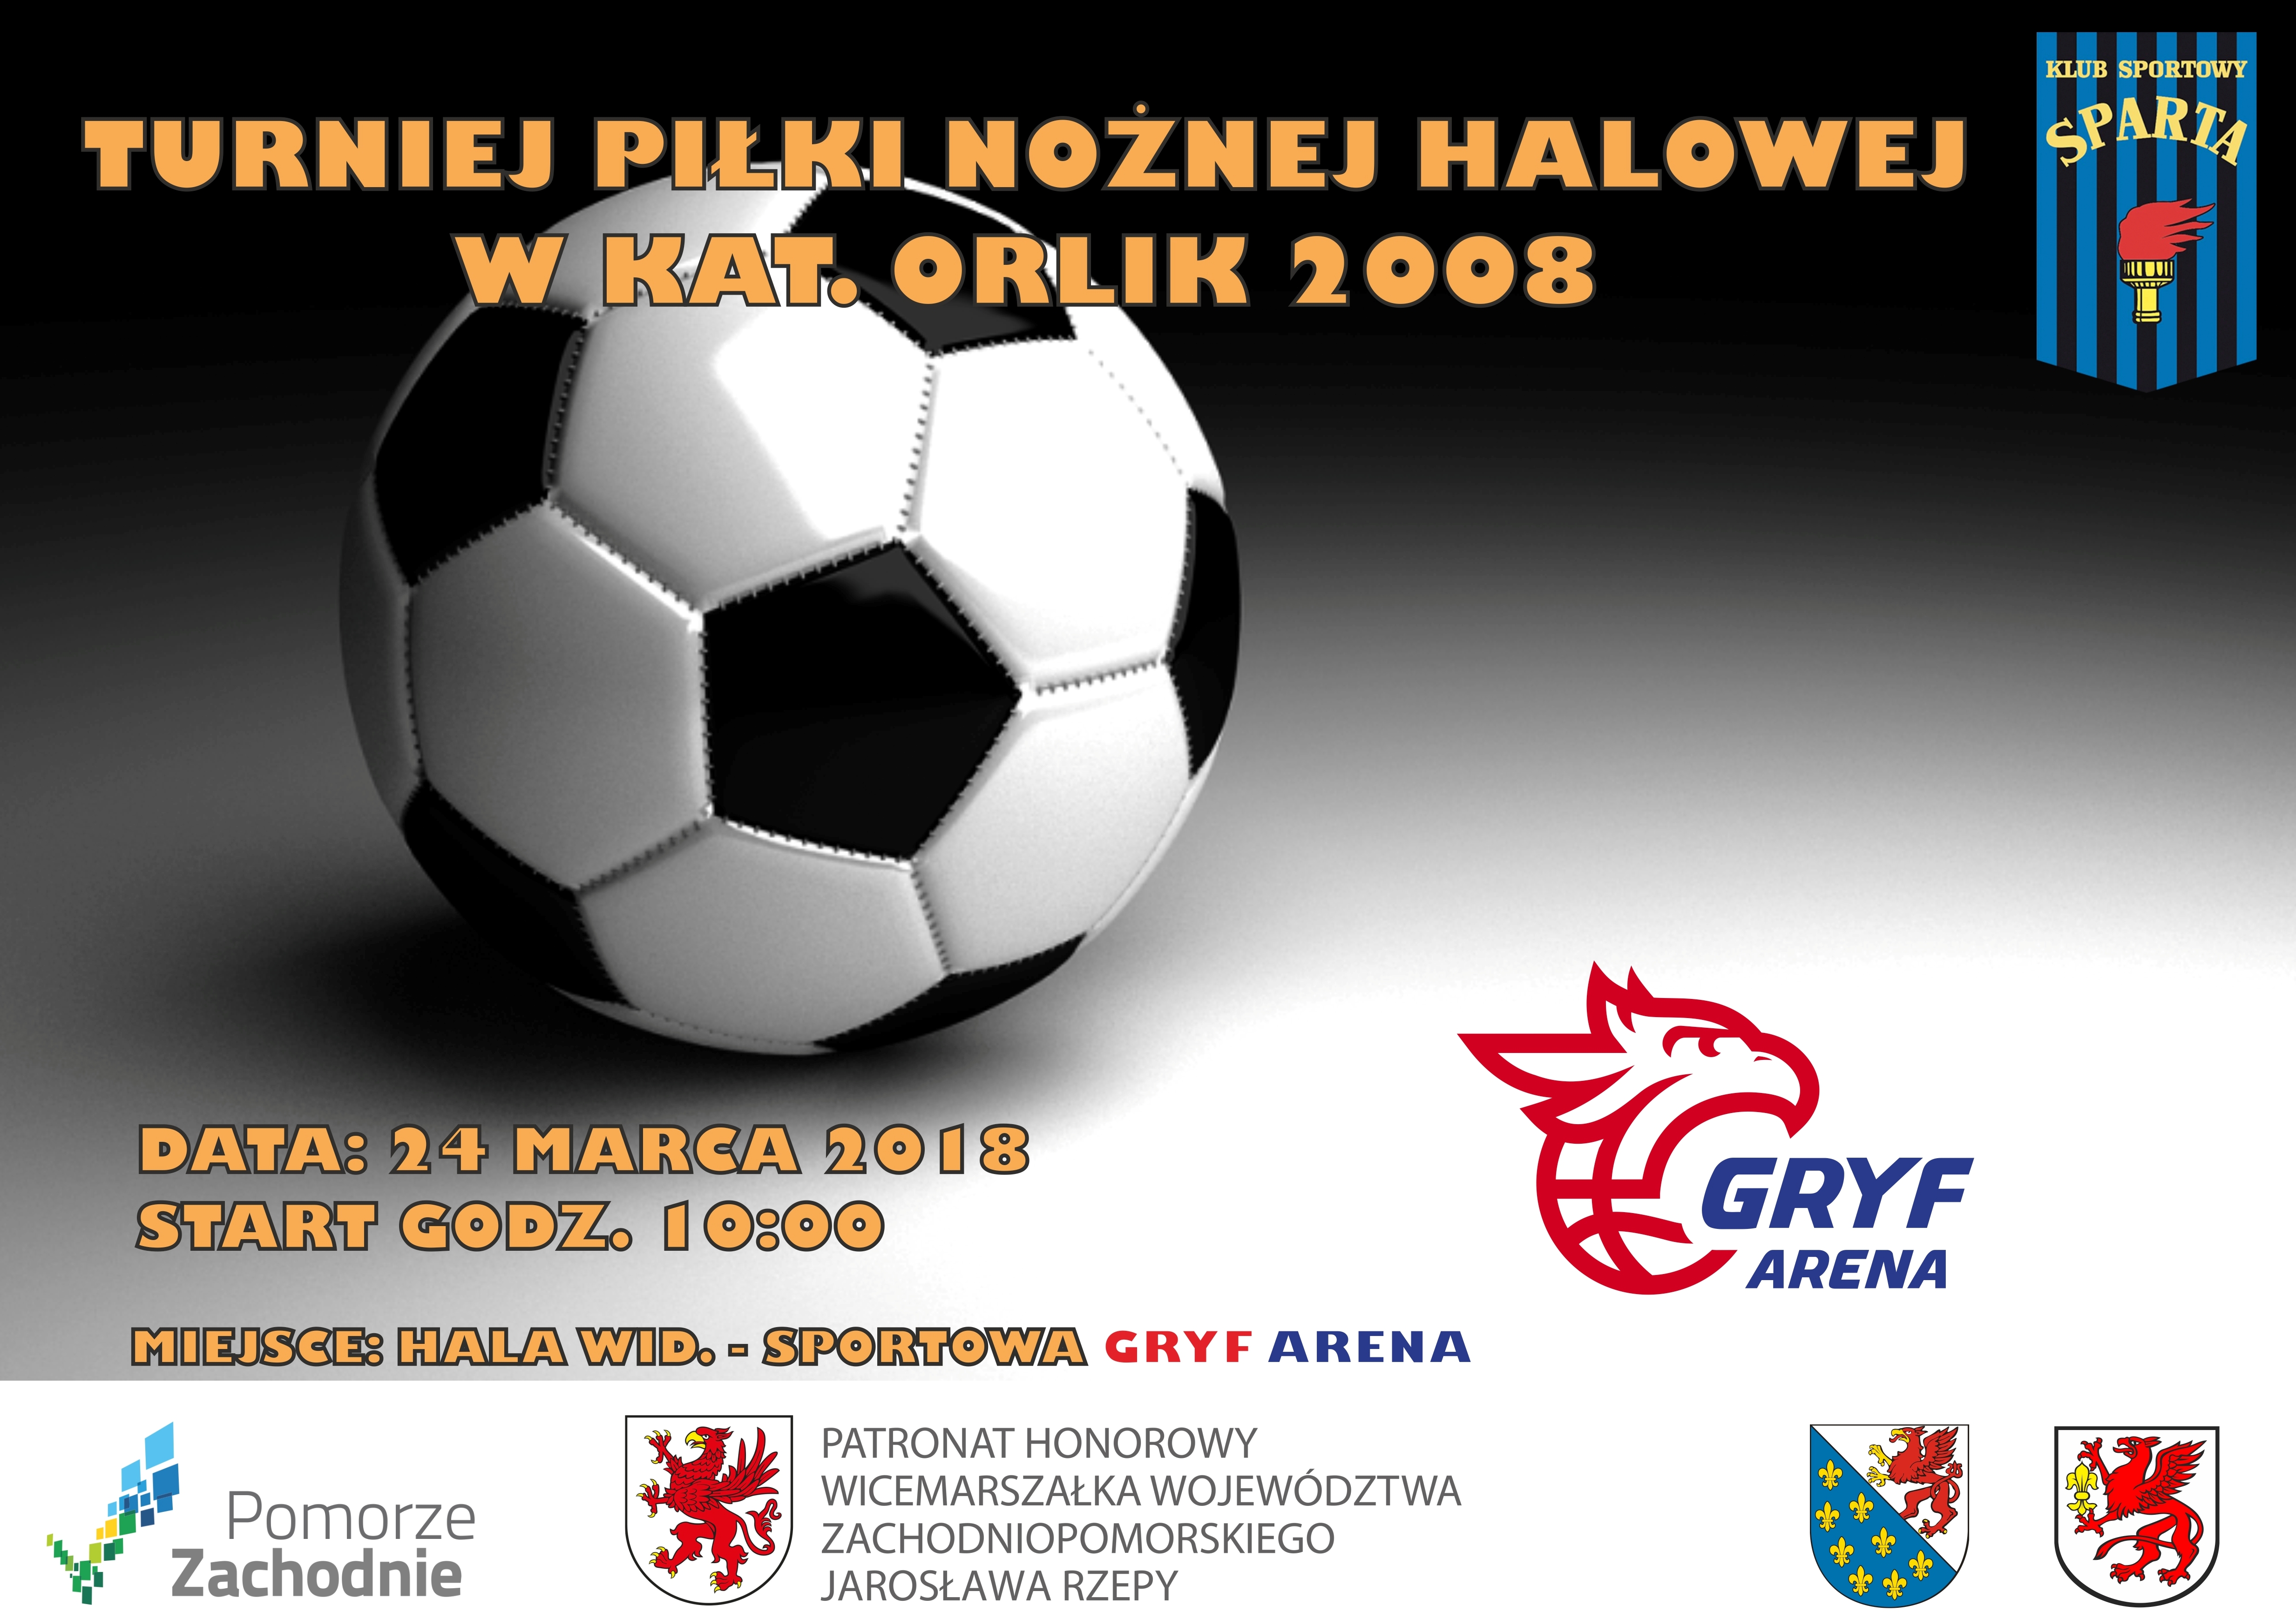 Turniej Piłki Nożnej Halowej w kat. Orlik 2008, Gryf Arena, marzec 2018, plakat